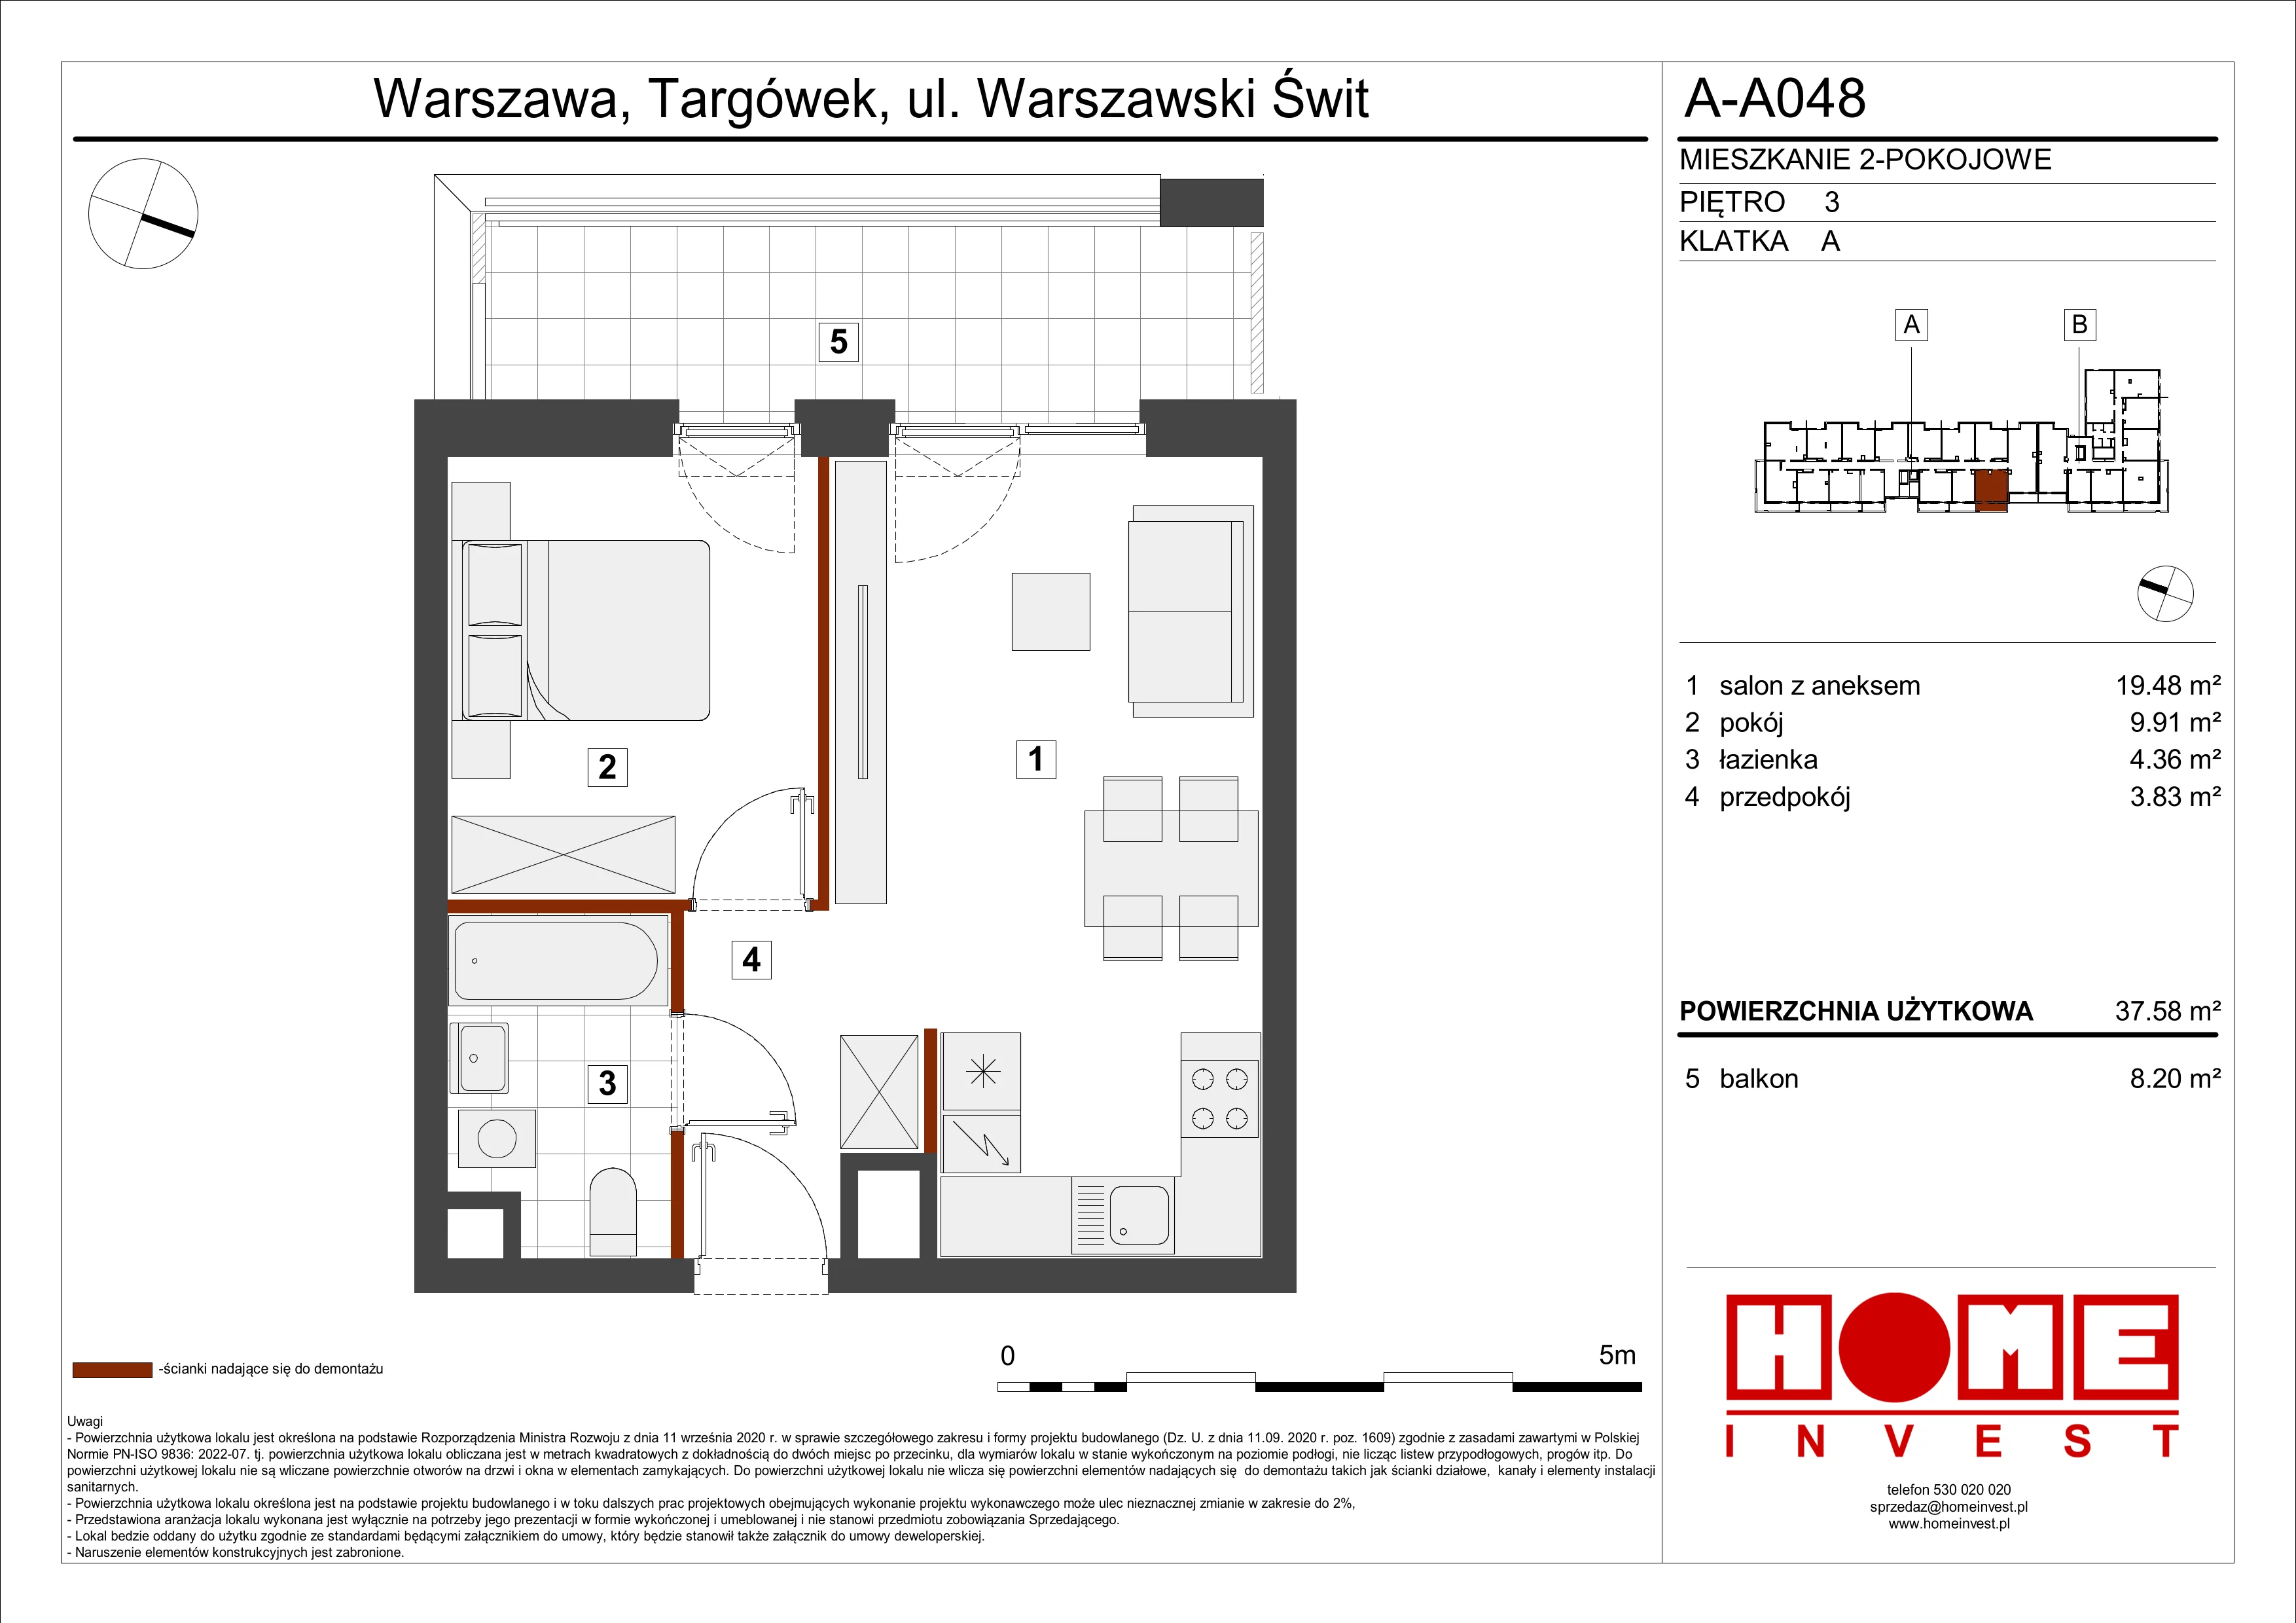 Mieszkanie 37,58 m², piętro 3, oferta nr A-A048, Warszawski Świt, Warszawa, Targówek, Bródno, ul. Warszawski Świt 5